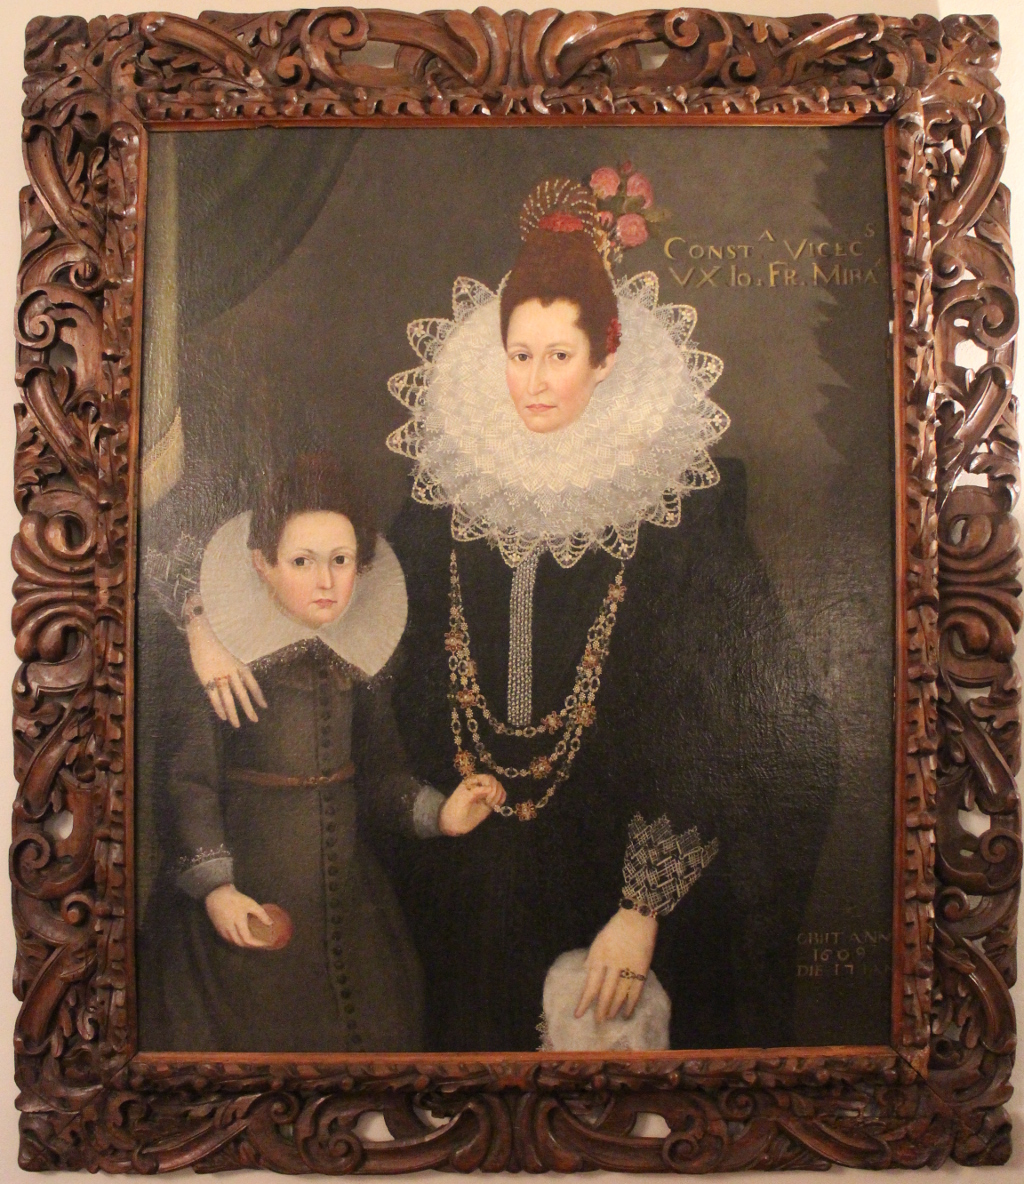 Ritratto della viscontessa Costanza con la figlia (dipinto) di Pourbus Frans il giovane (maniera) - ambito fiammingo (inizio sec. XVII)